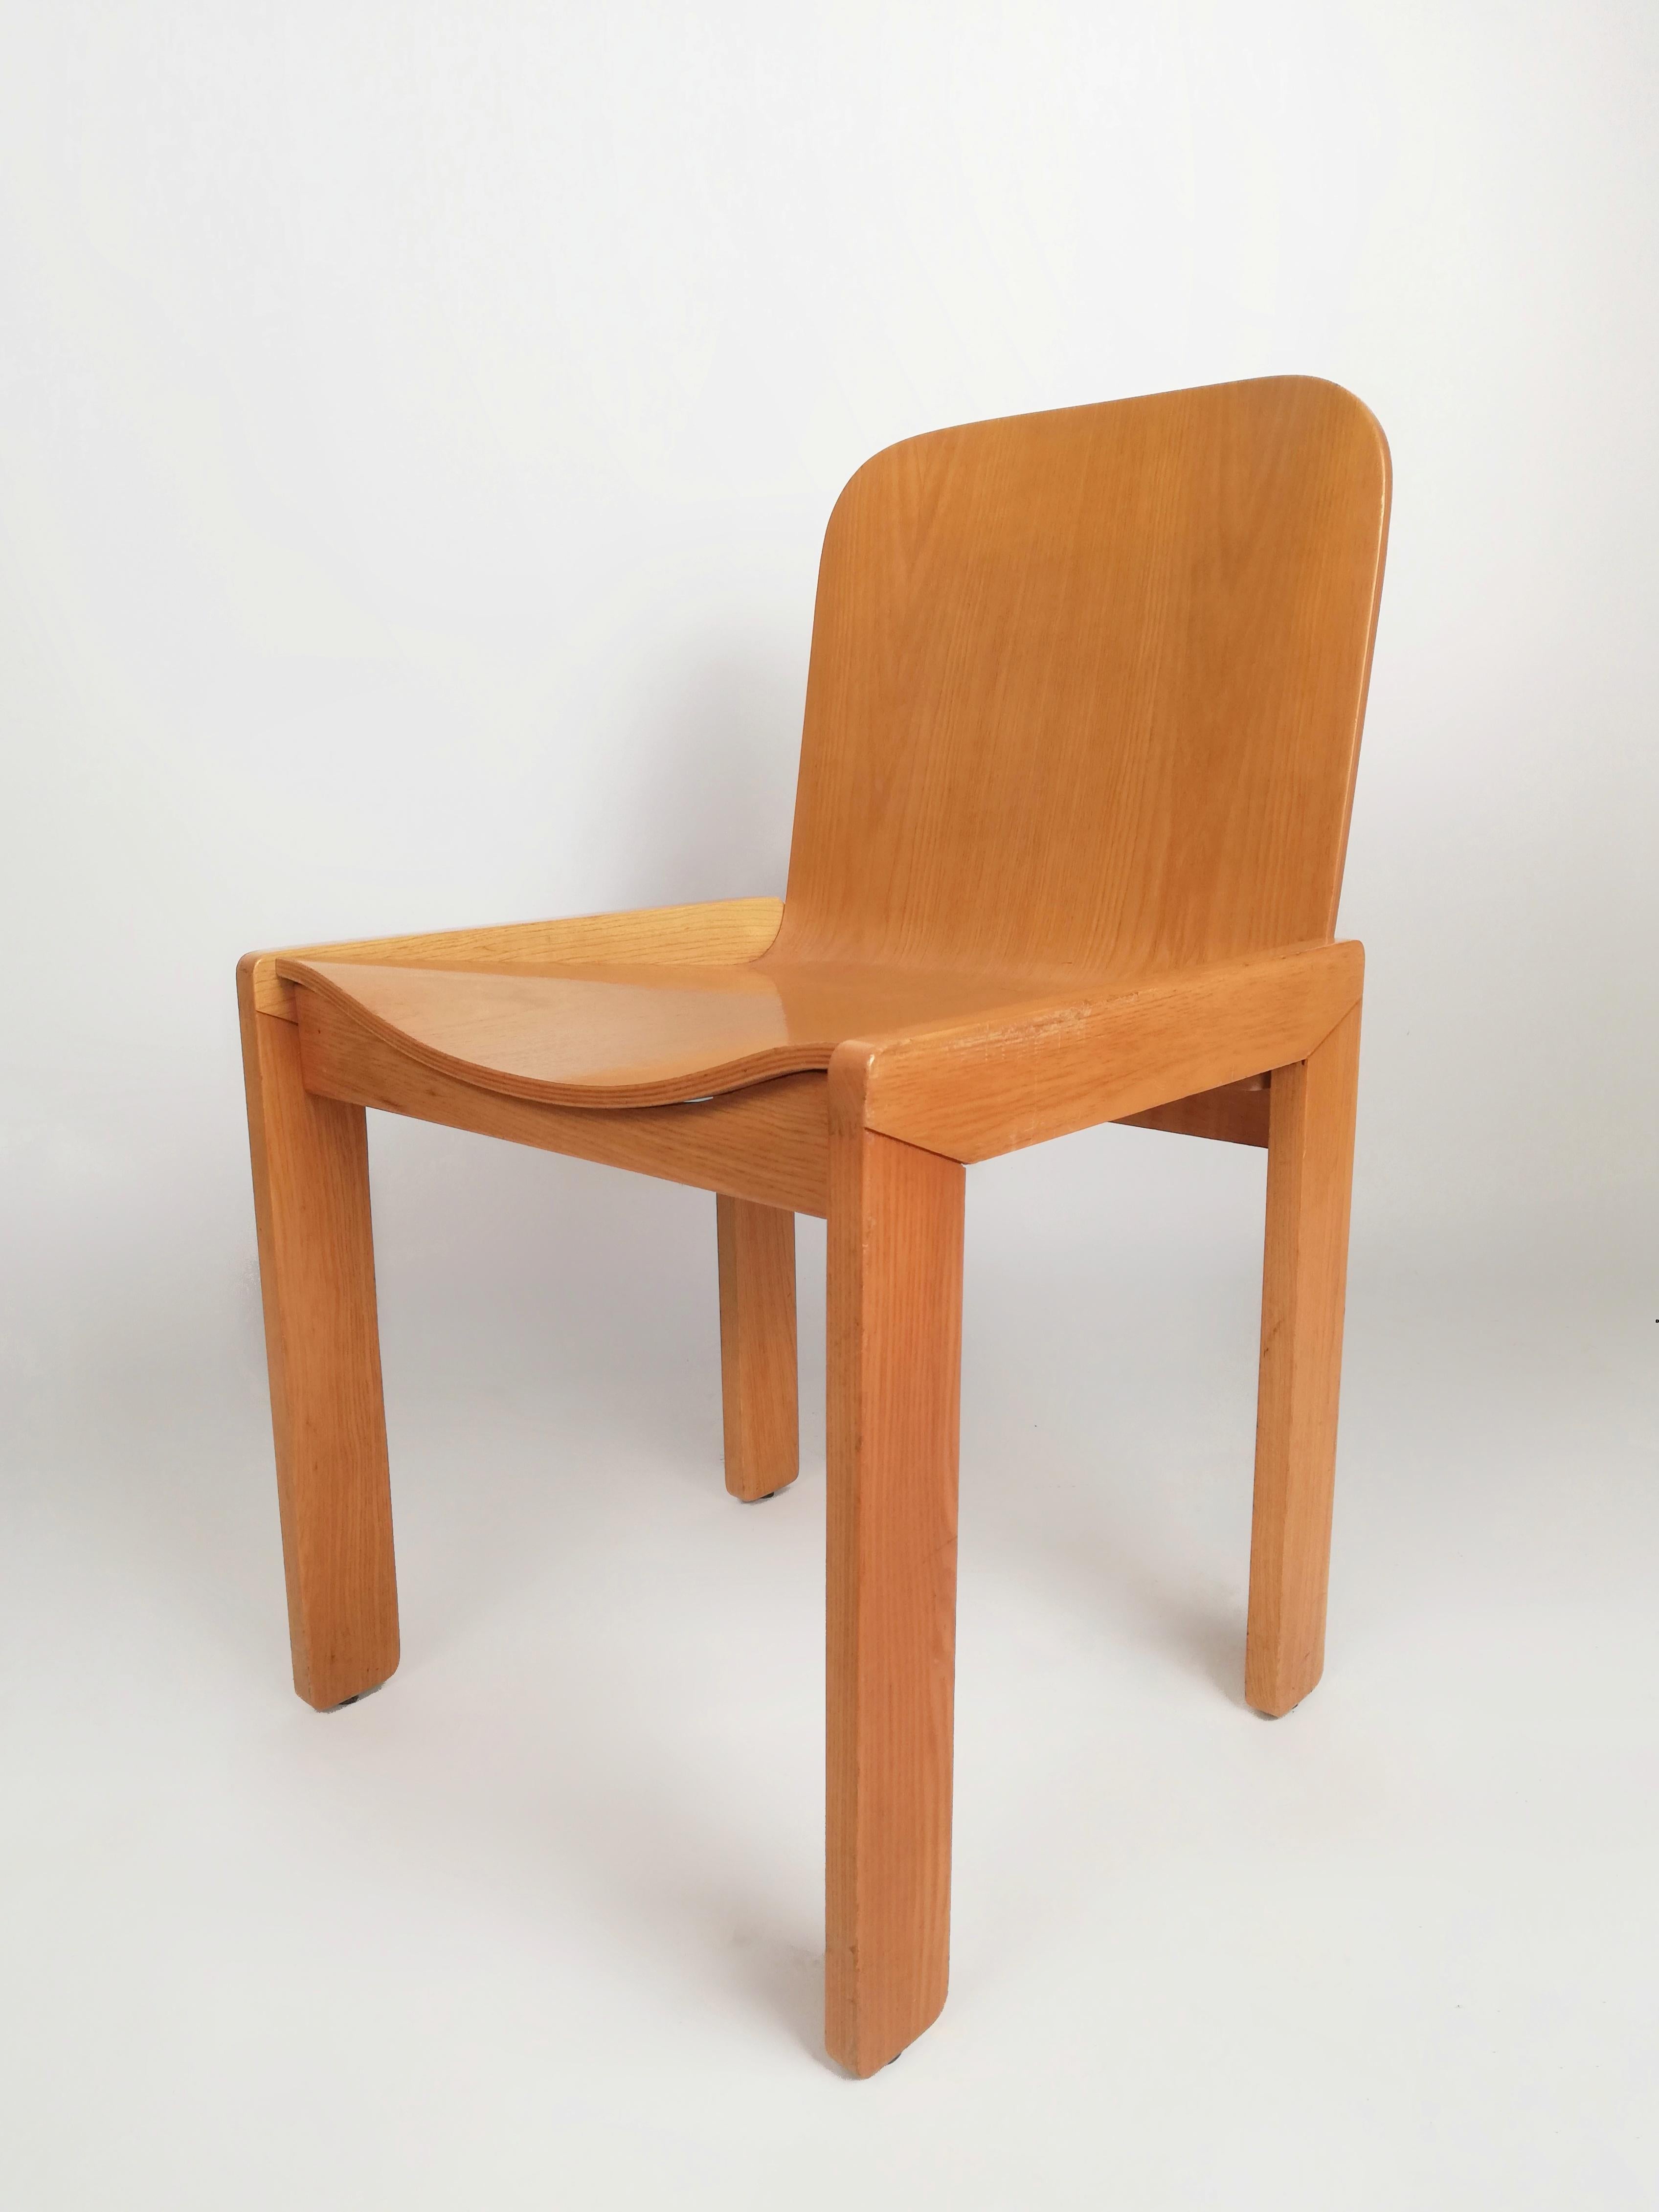 Un ensemble de six chaises produites en Italie par l'entreprise historique Molteni, datant des années 70 et 80.
Fabriqué en contreplaqué courbé plaqué frêne, il s'adapte, par flexion du dossier et de l'assise, à la posture de la personne,